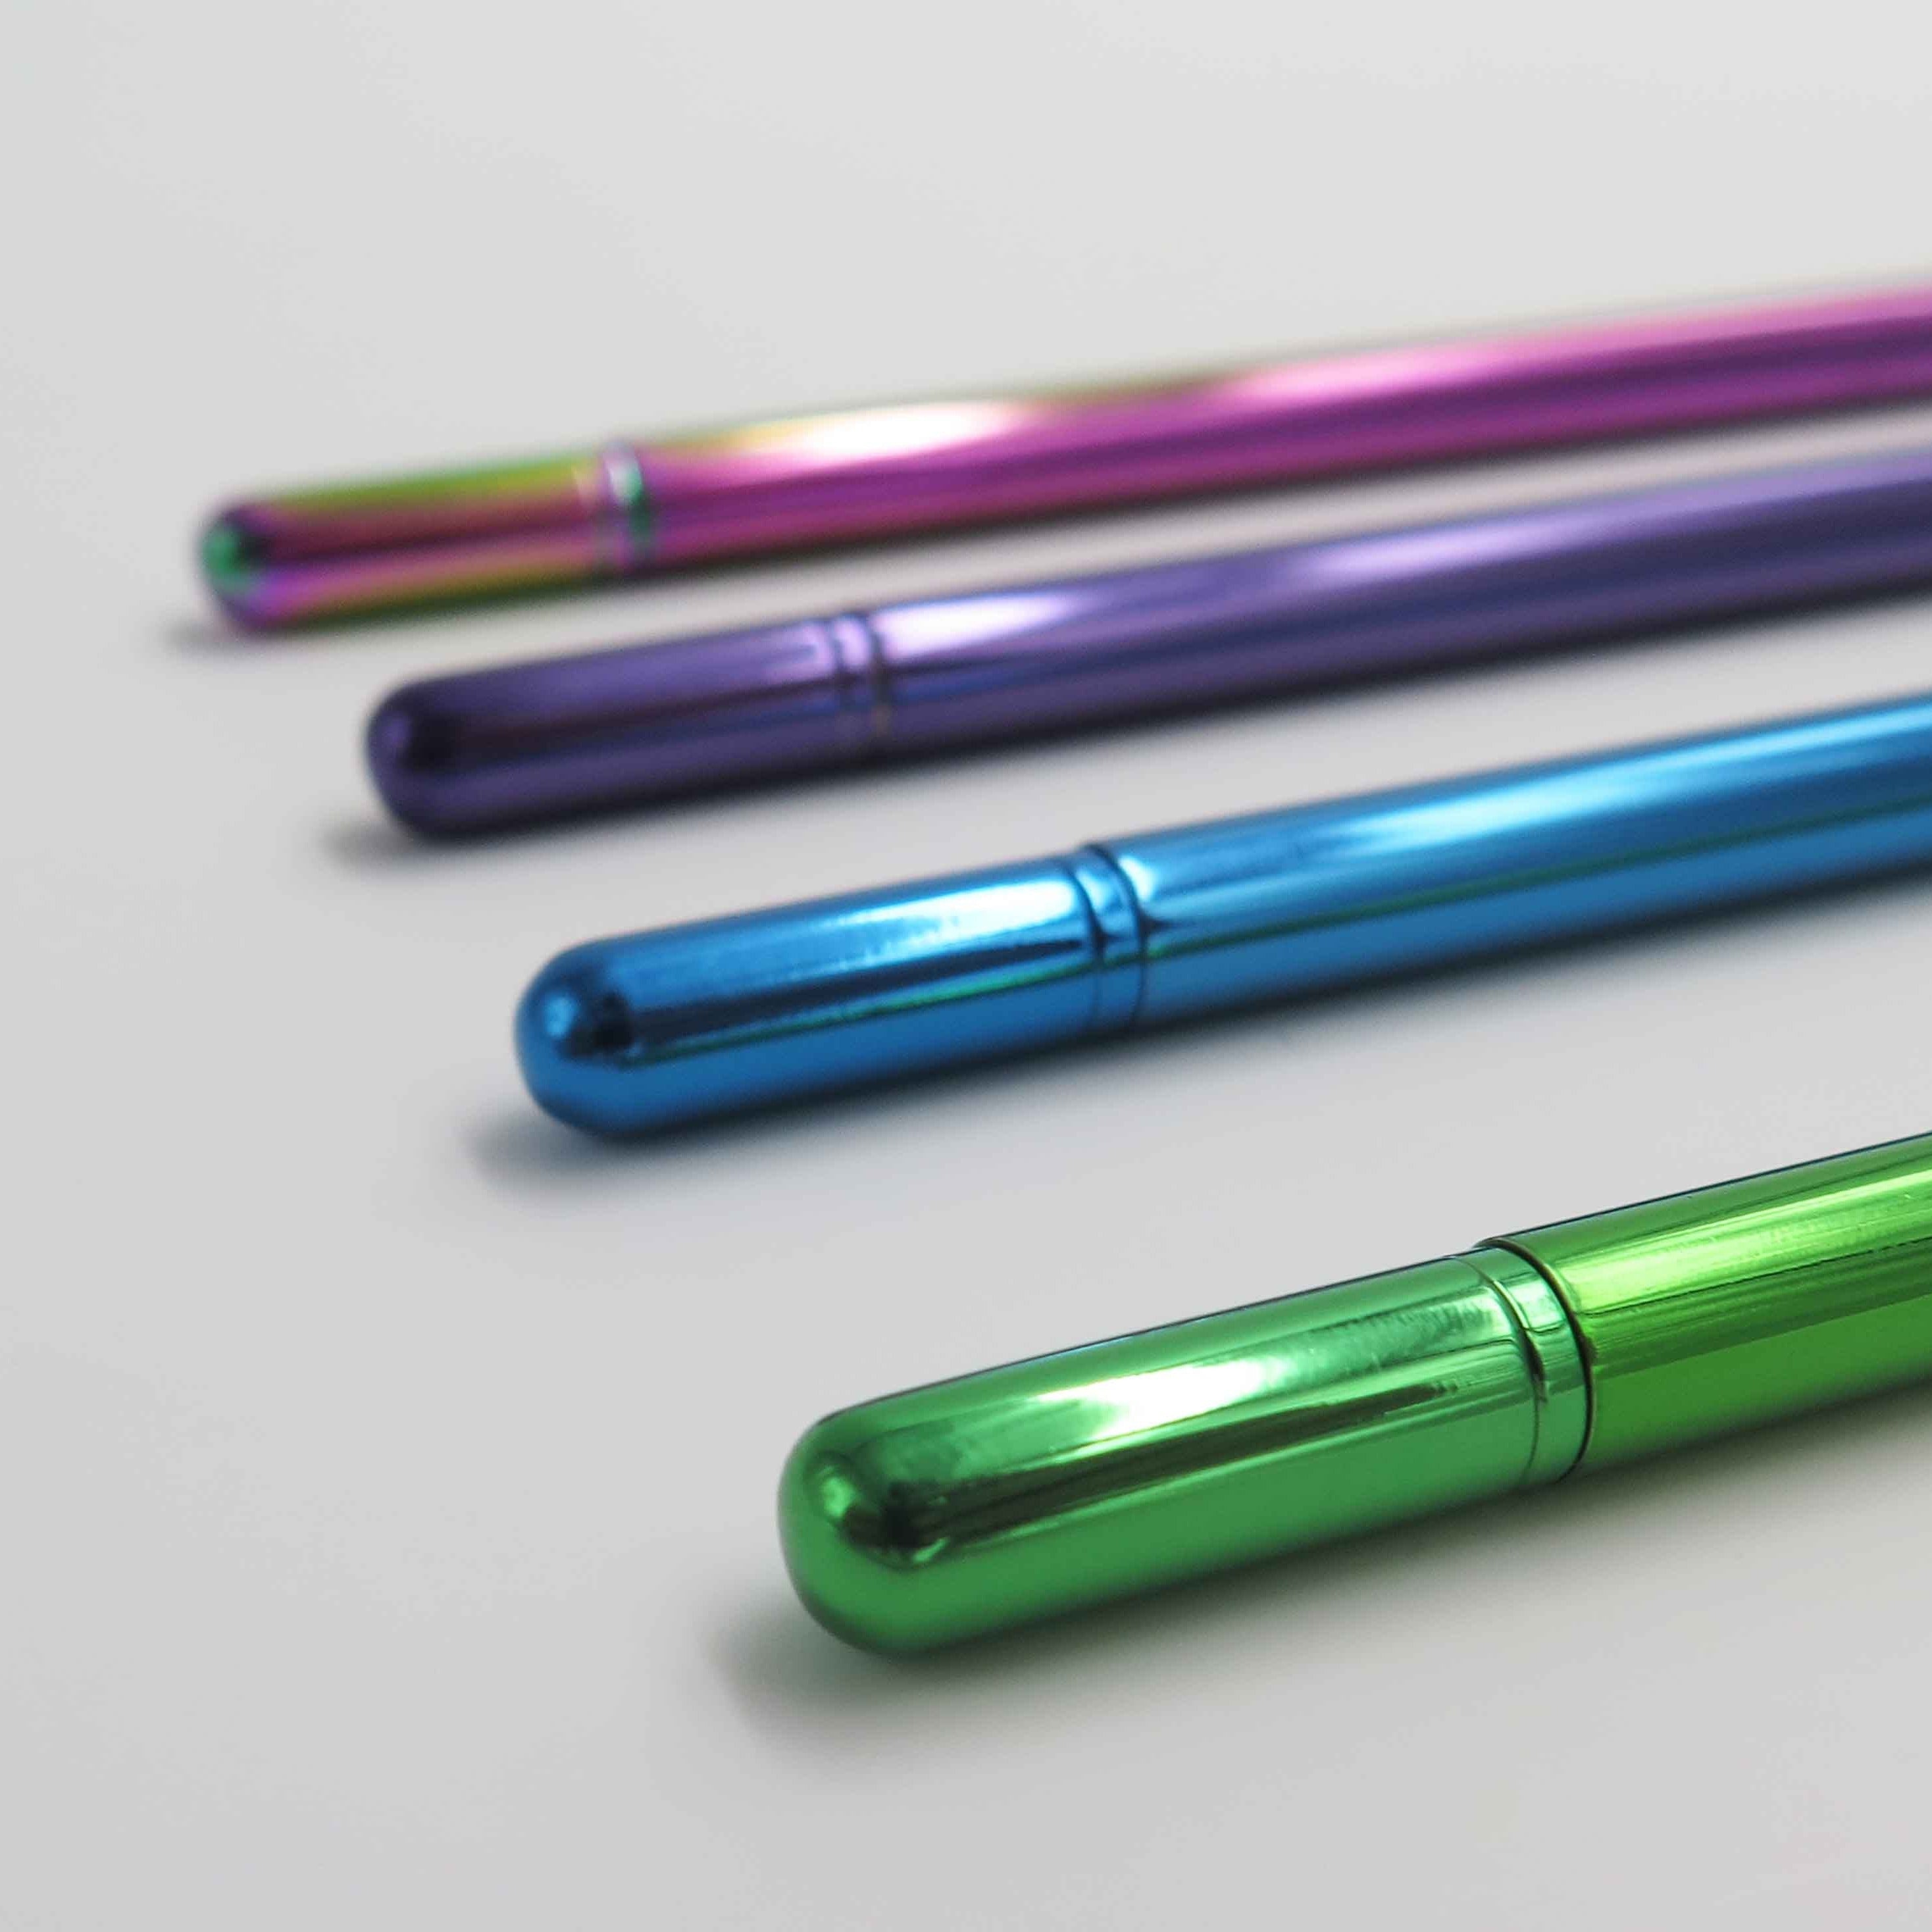 OCTÀGON DESIGN | "Drop pen" collection. Blue, purple, green and rainbow pen colors.